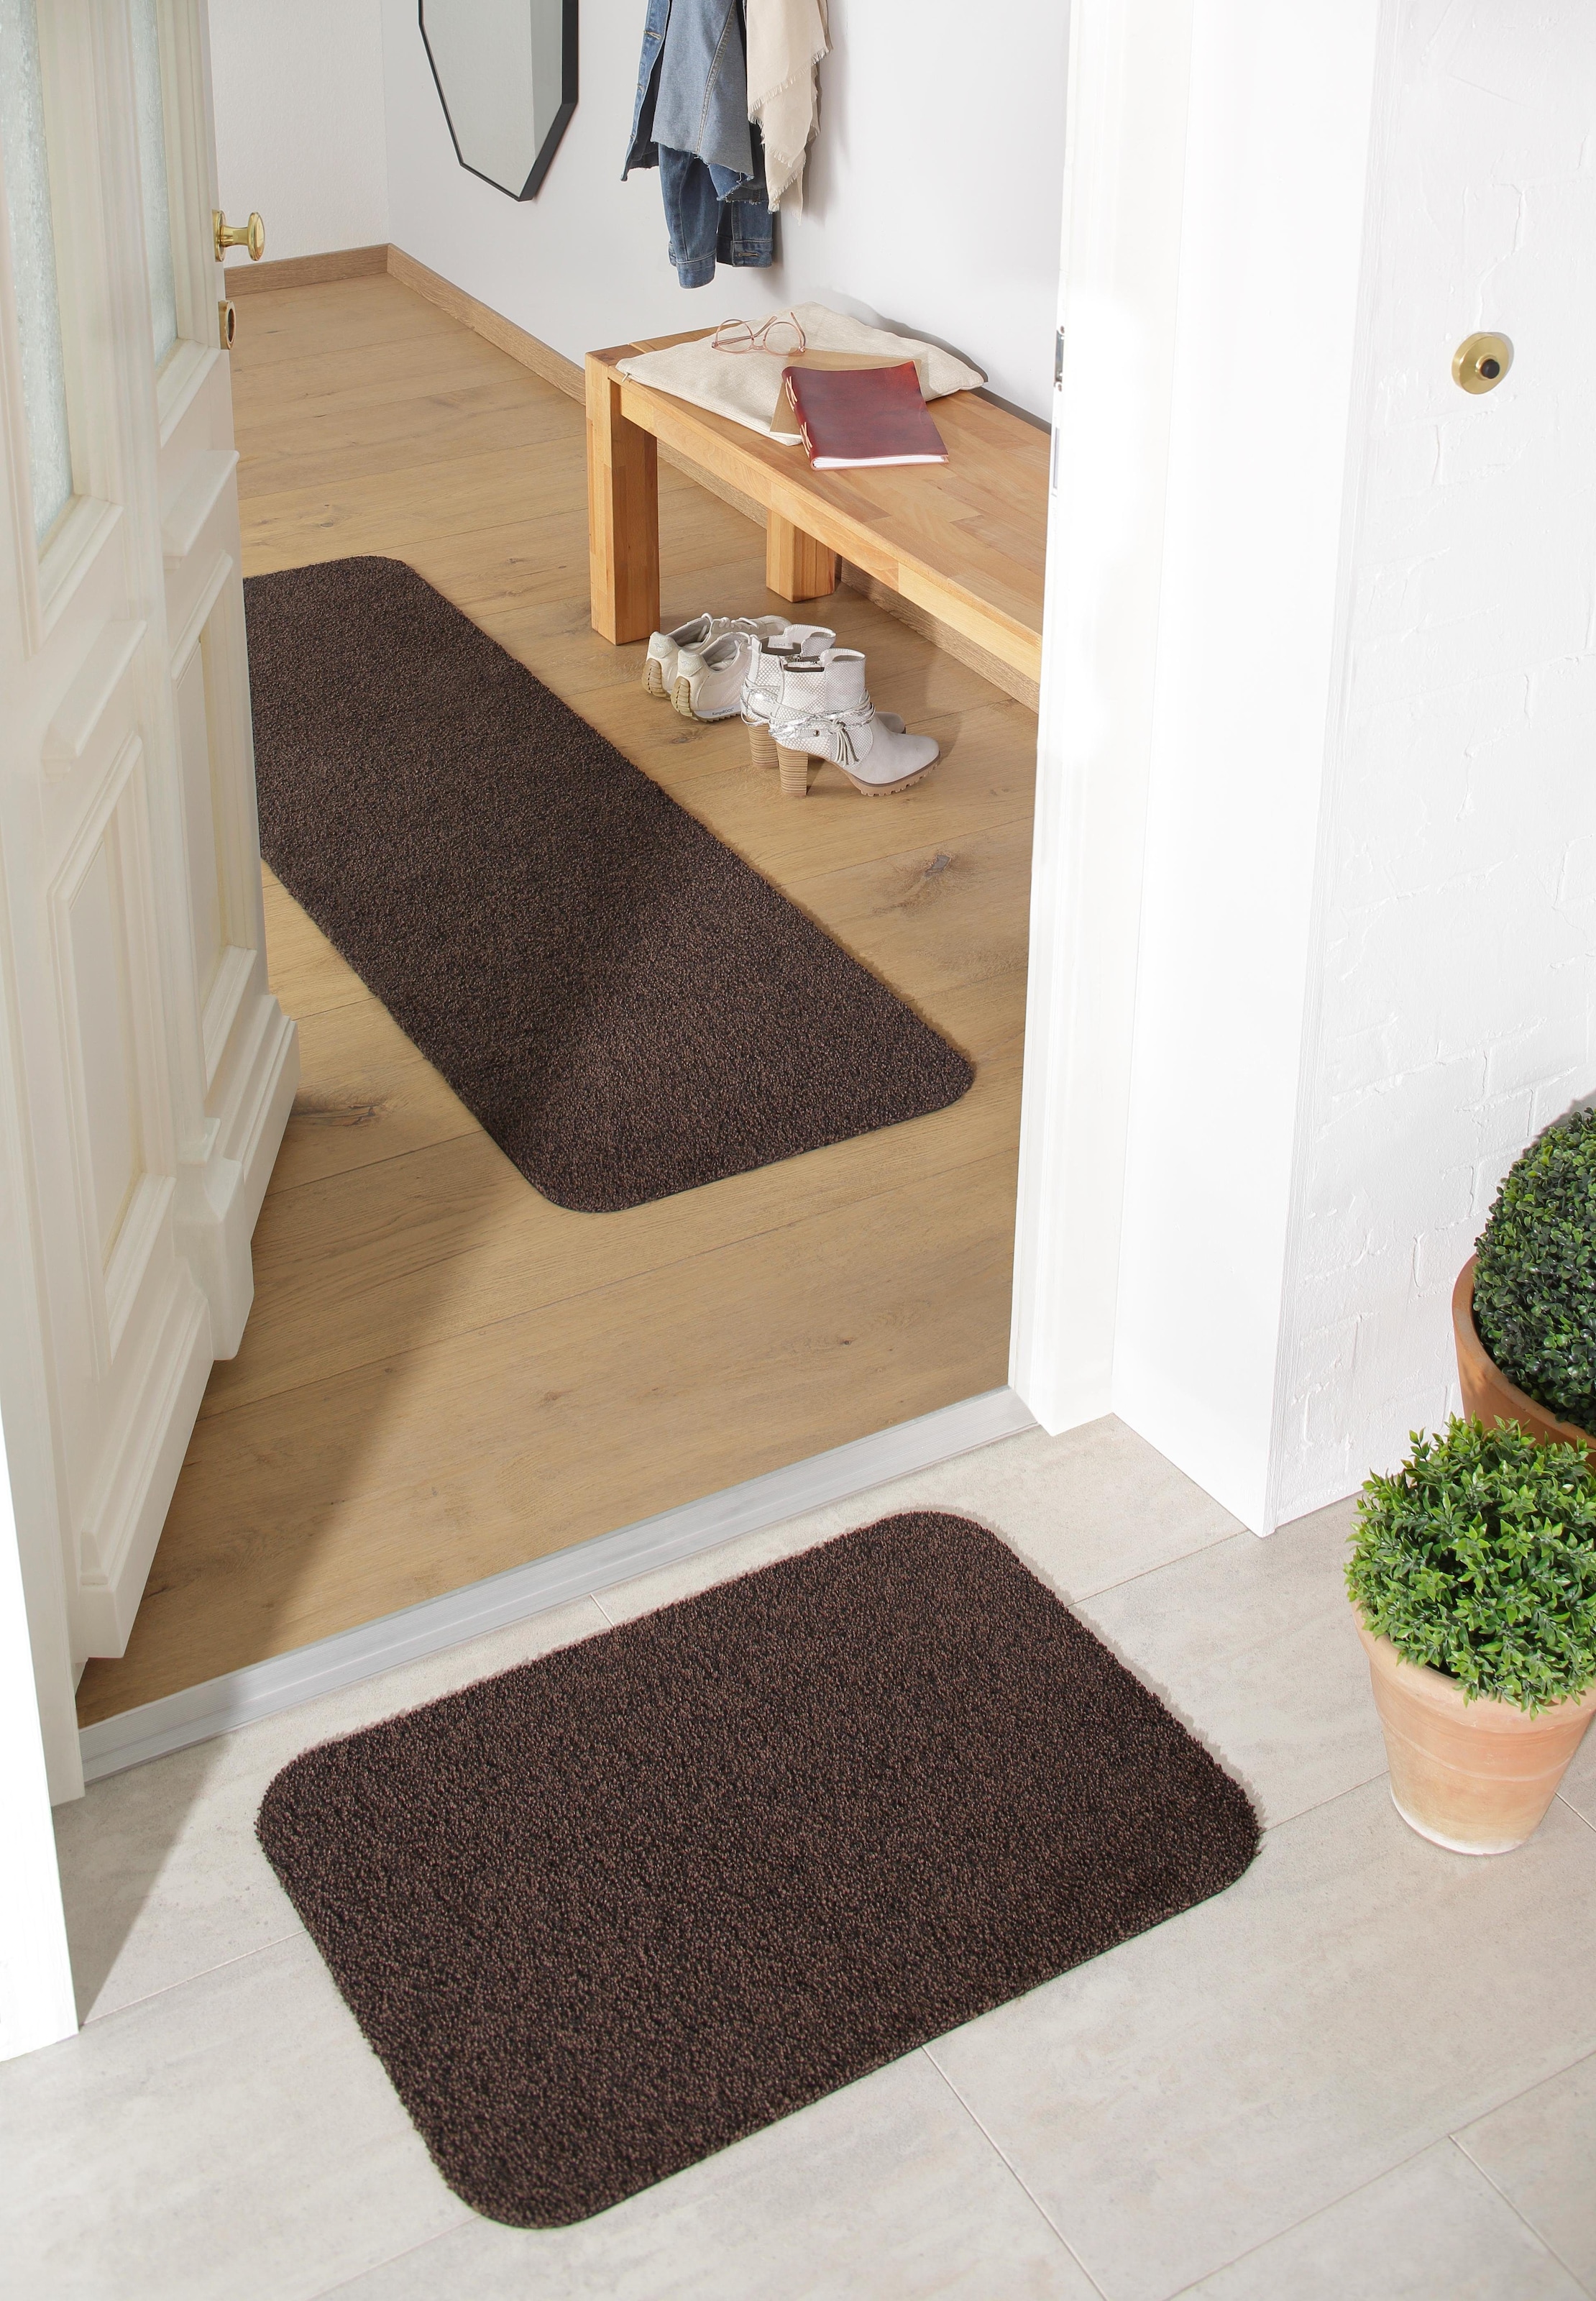 Home affaire Fußmatte »Willa«, rechteckig, In- und Outdoor geeignet, waschbar